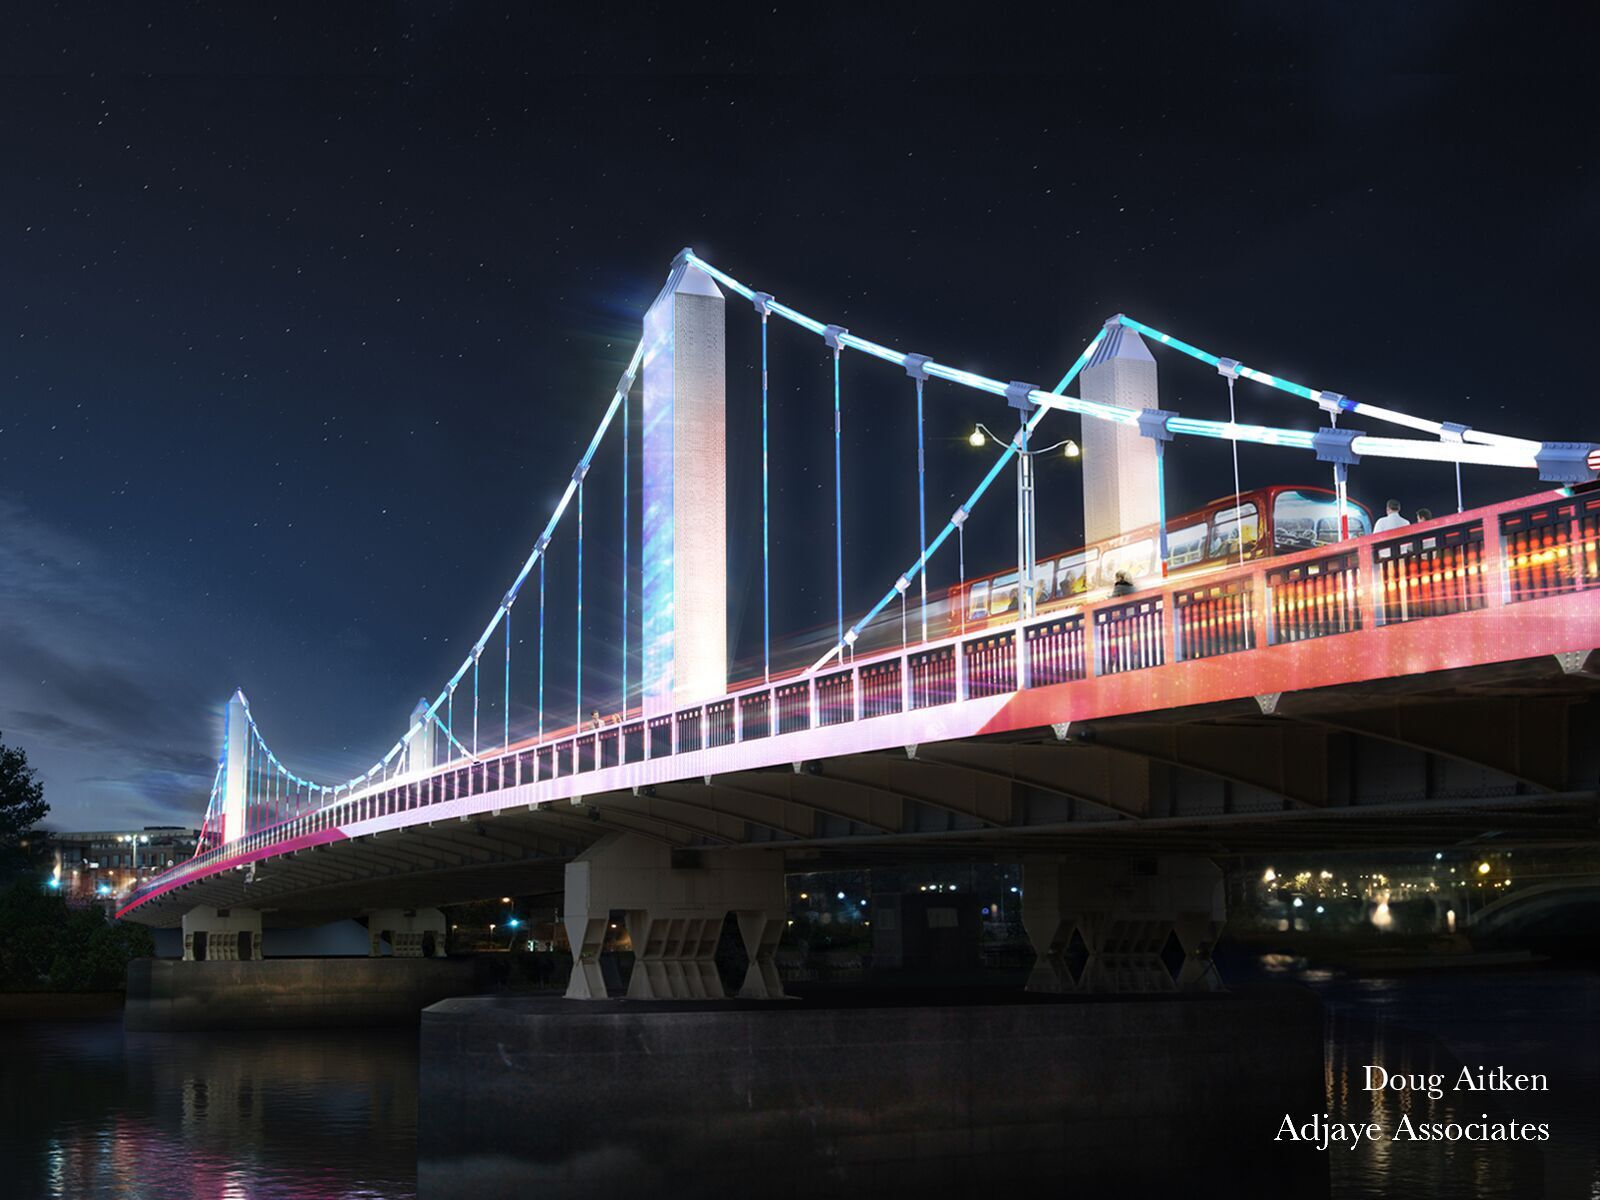 Doug Aitken - 'Lightstream' Chelsea Bridge, London, UK © MRC and Adjaye Associates